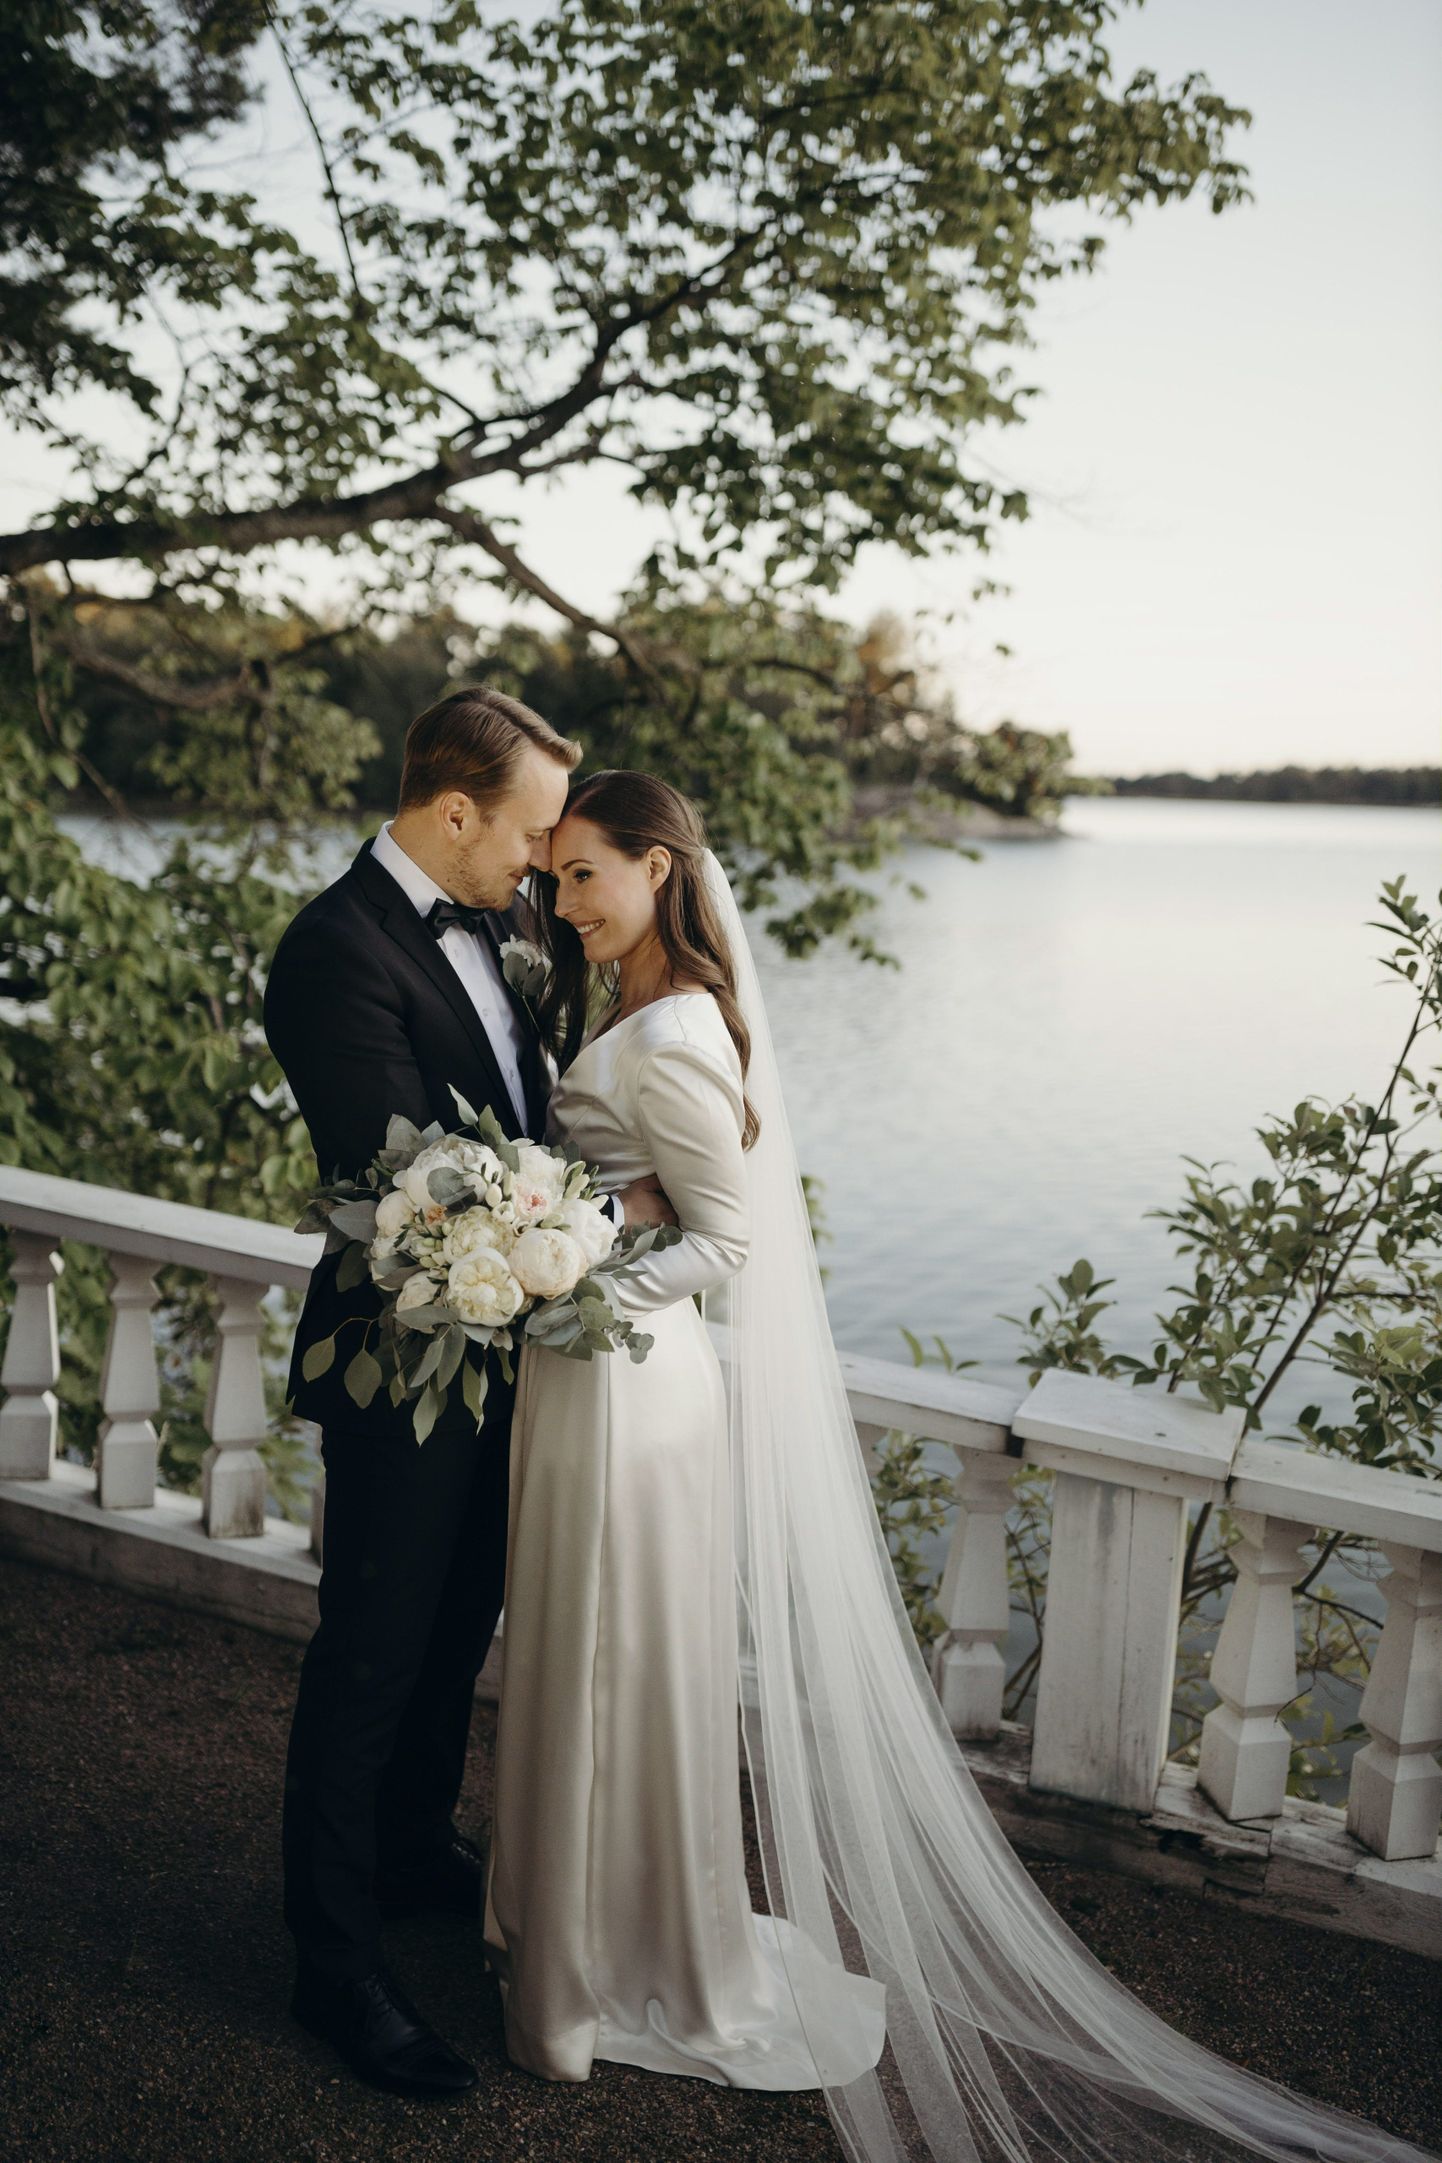 Soome peaminister Sanna Marin ja ta abikaasa Markus Räikkönen nende pulmafotol